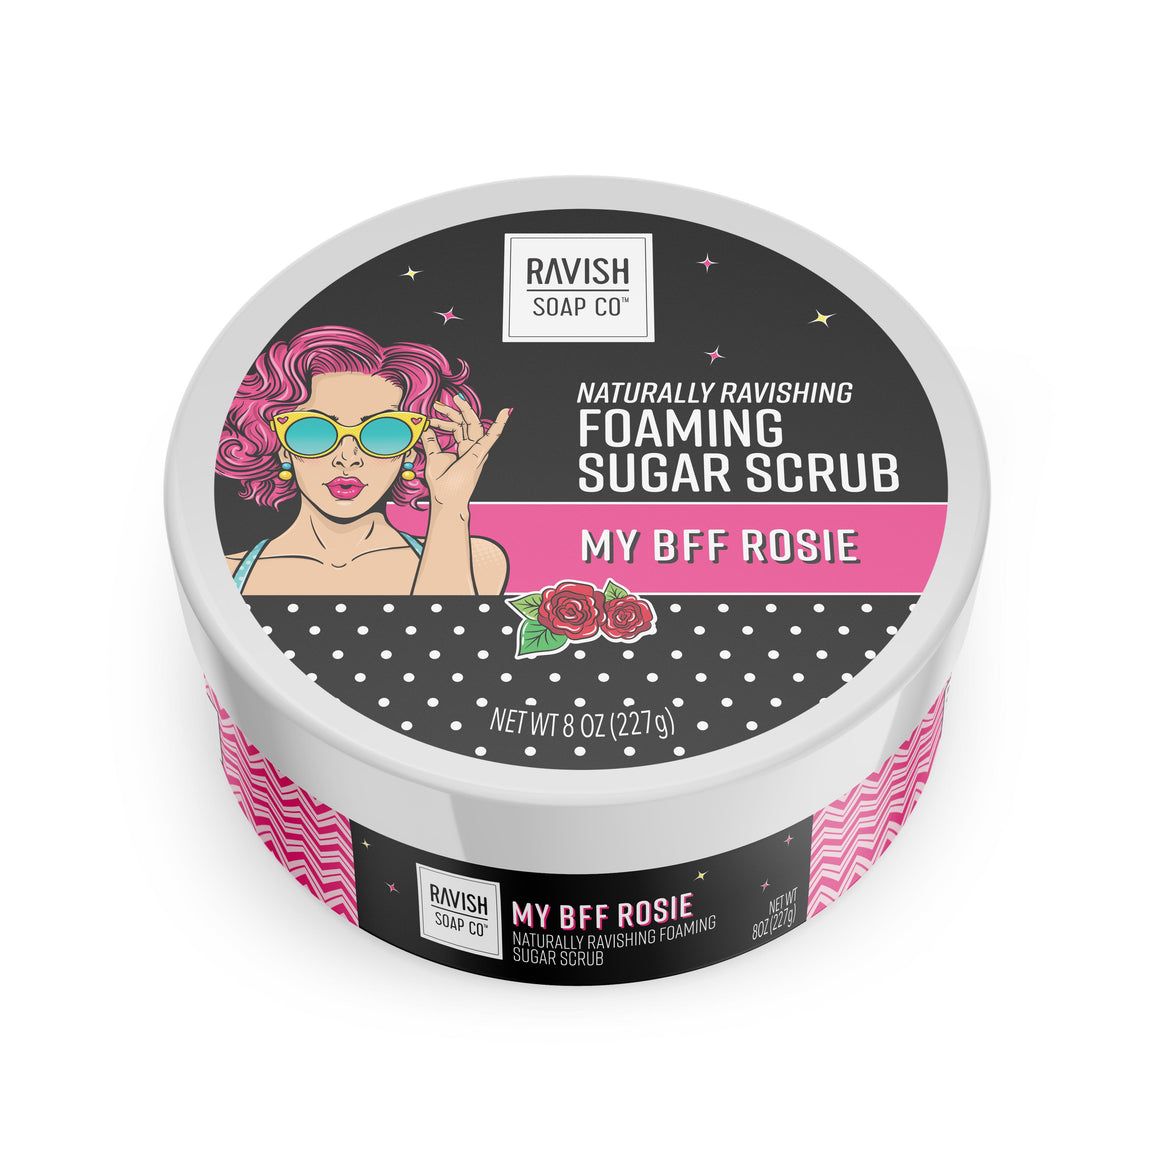 My BFF Rosie Foaming Sugar Scrub Ravish Soap Company